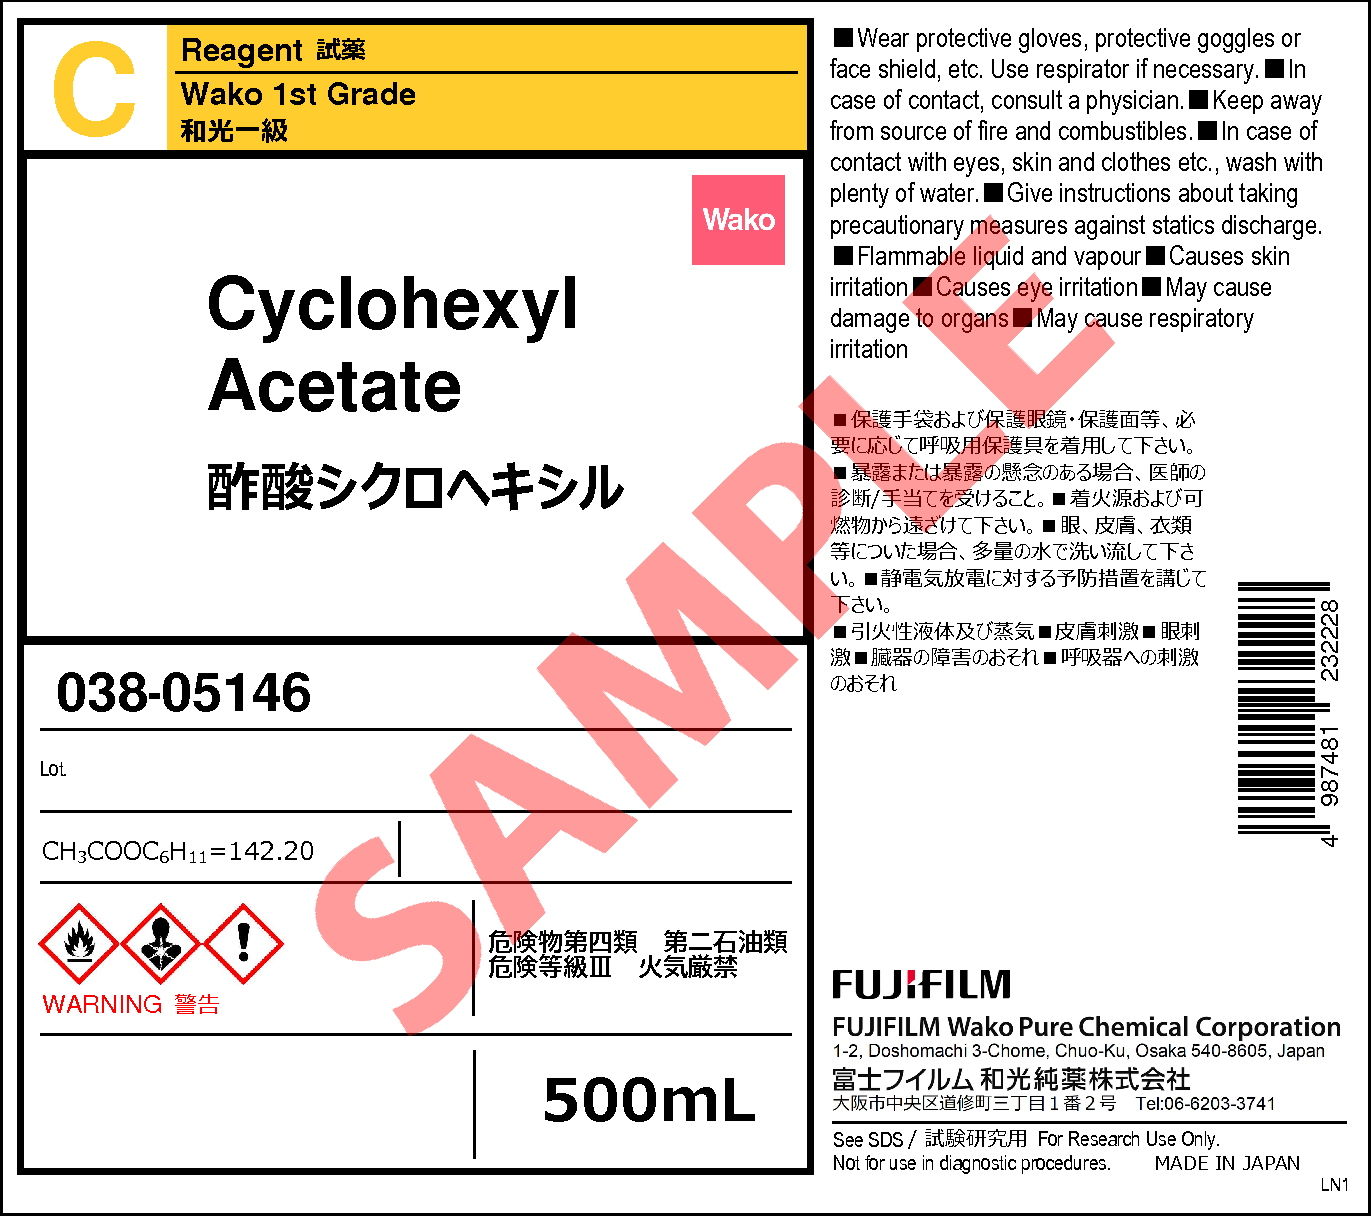 622-45-7・酢酸シクロヘキシル・Cyclohexyl Acetate・034-05143・038 